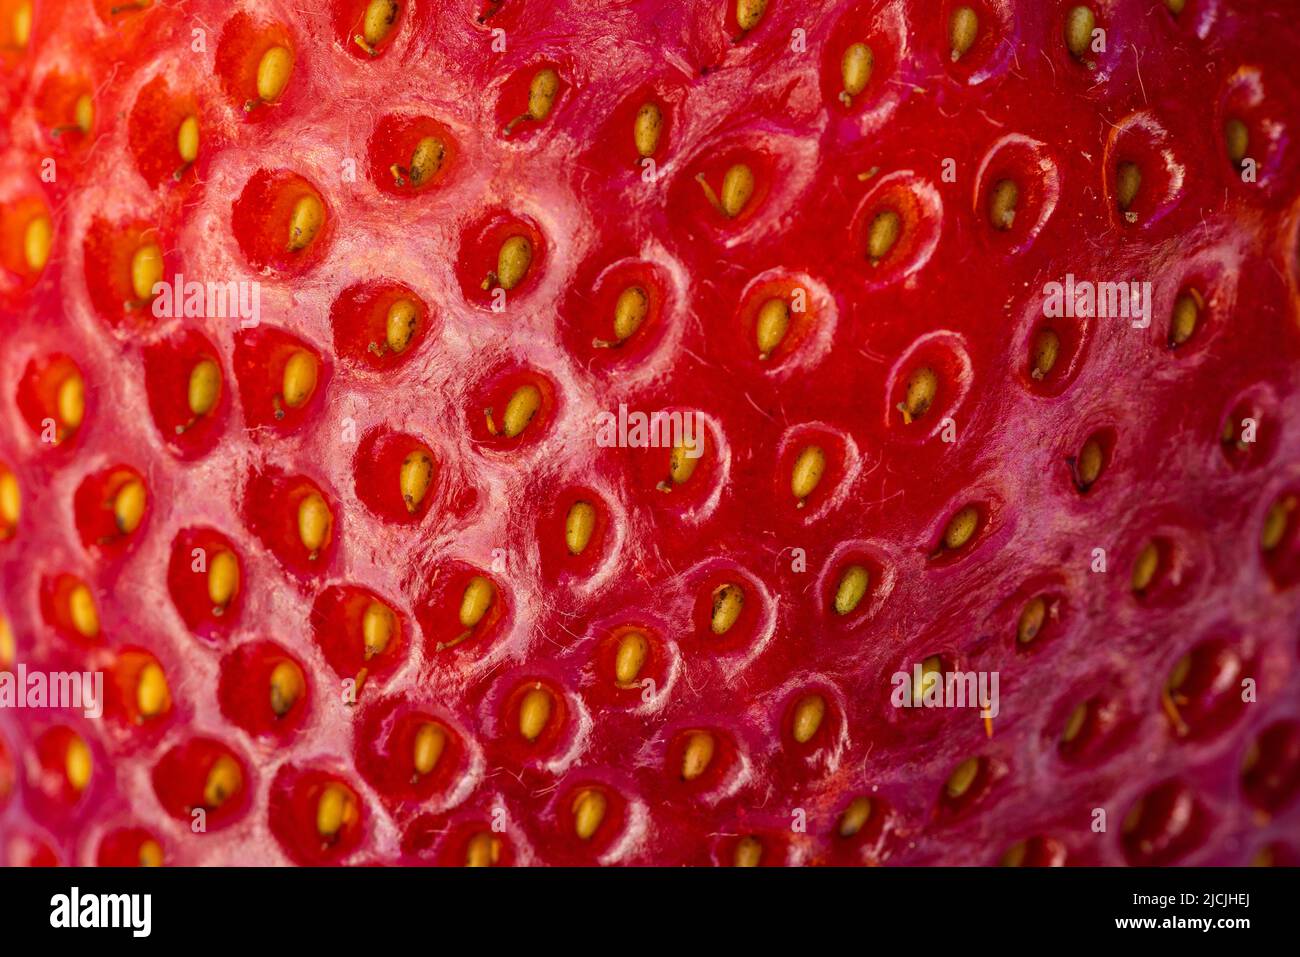 primer plano de una fresa madura roja con semillas doradas y una textura asombrosa Foto de stock